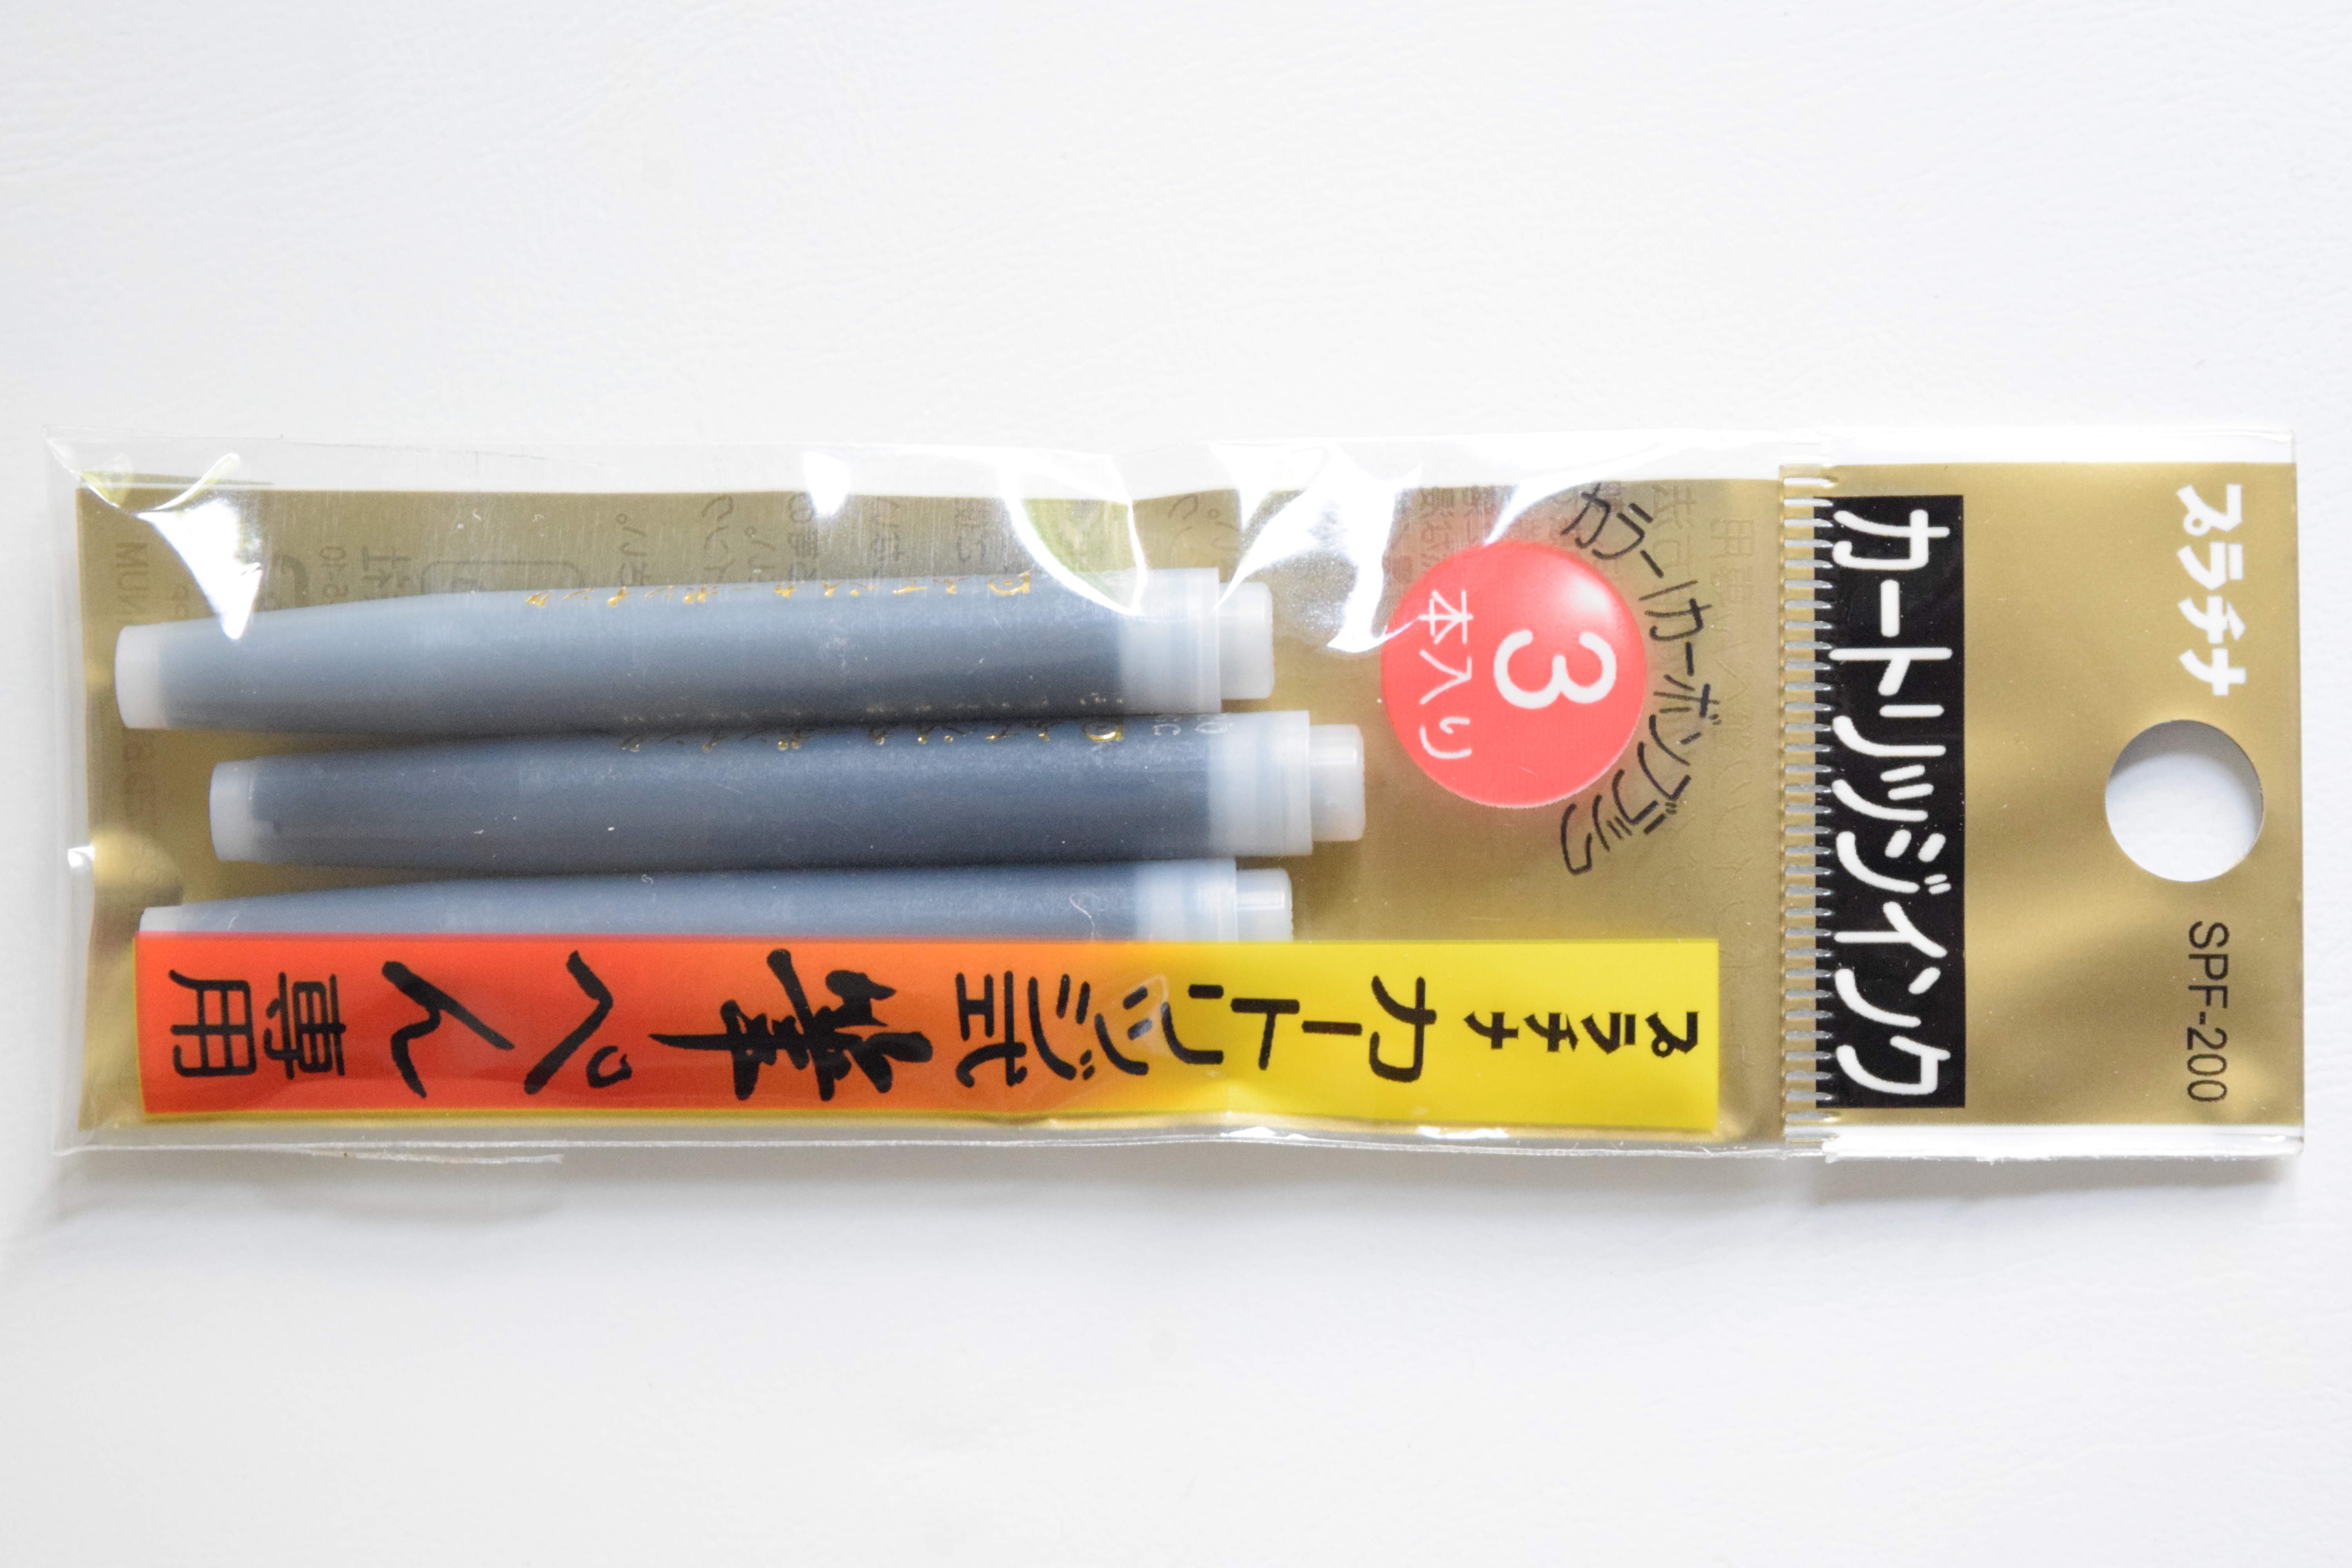 Platinum Pigmented Carbon Ink Cartridges for Brush Pen